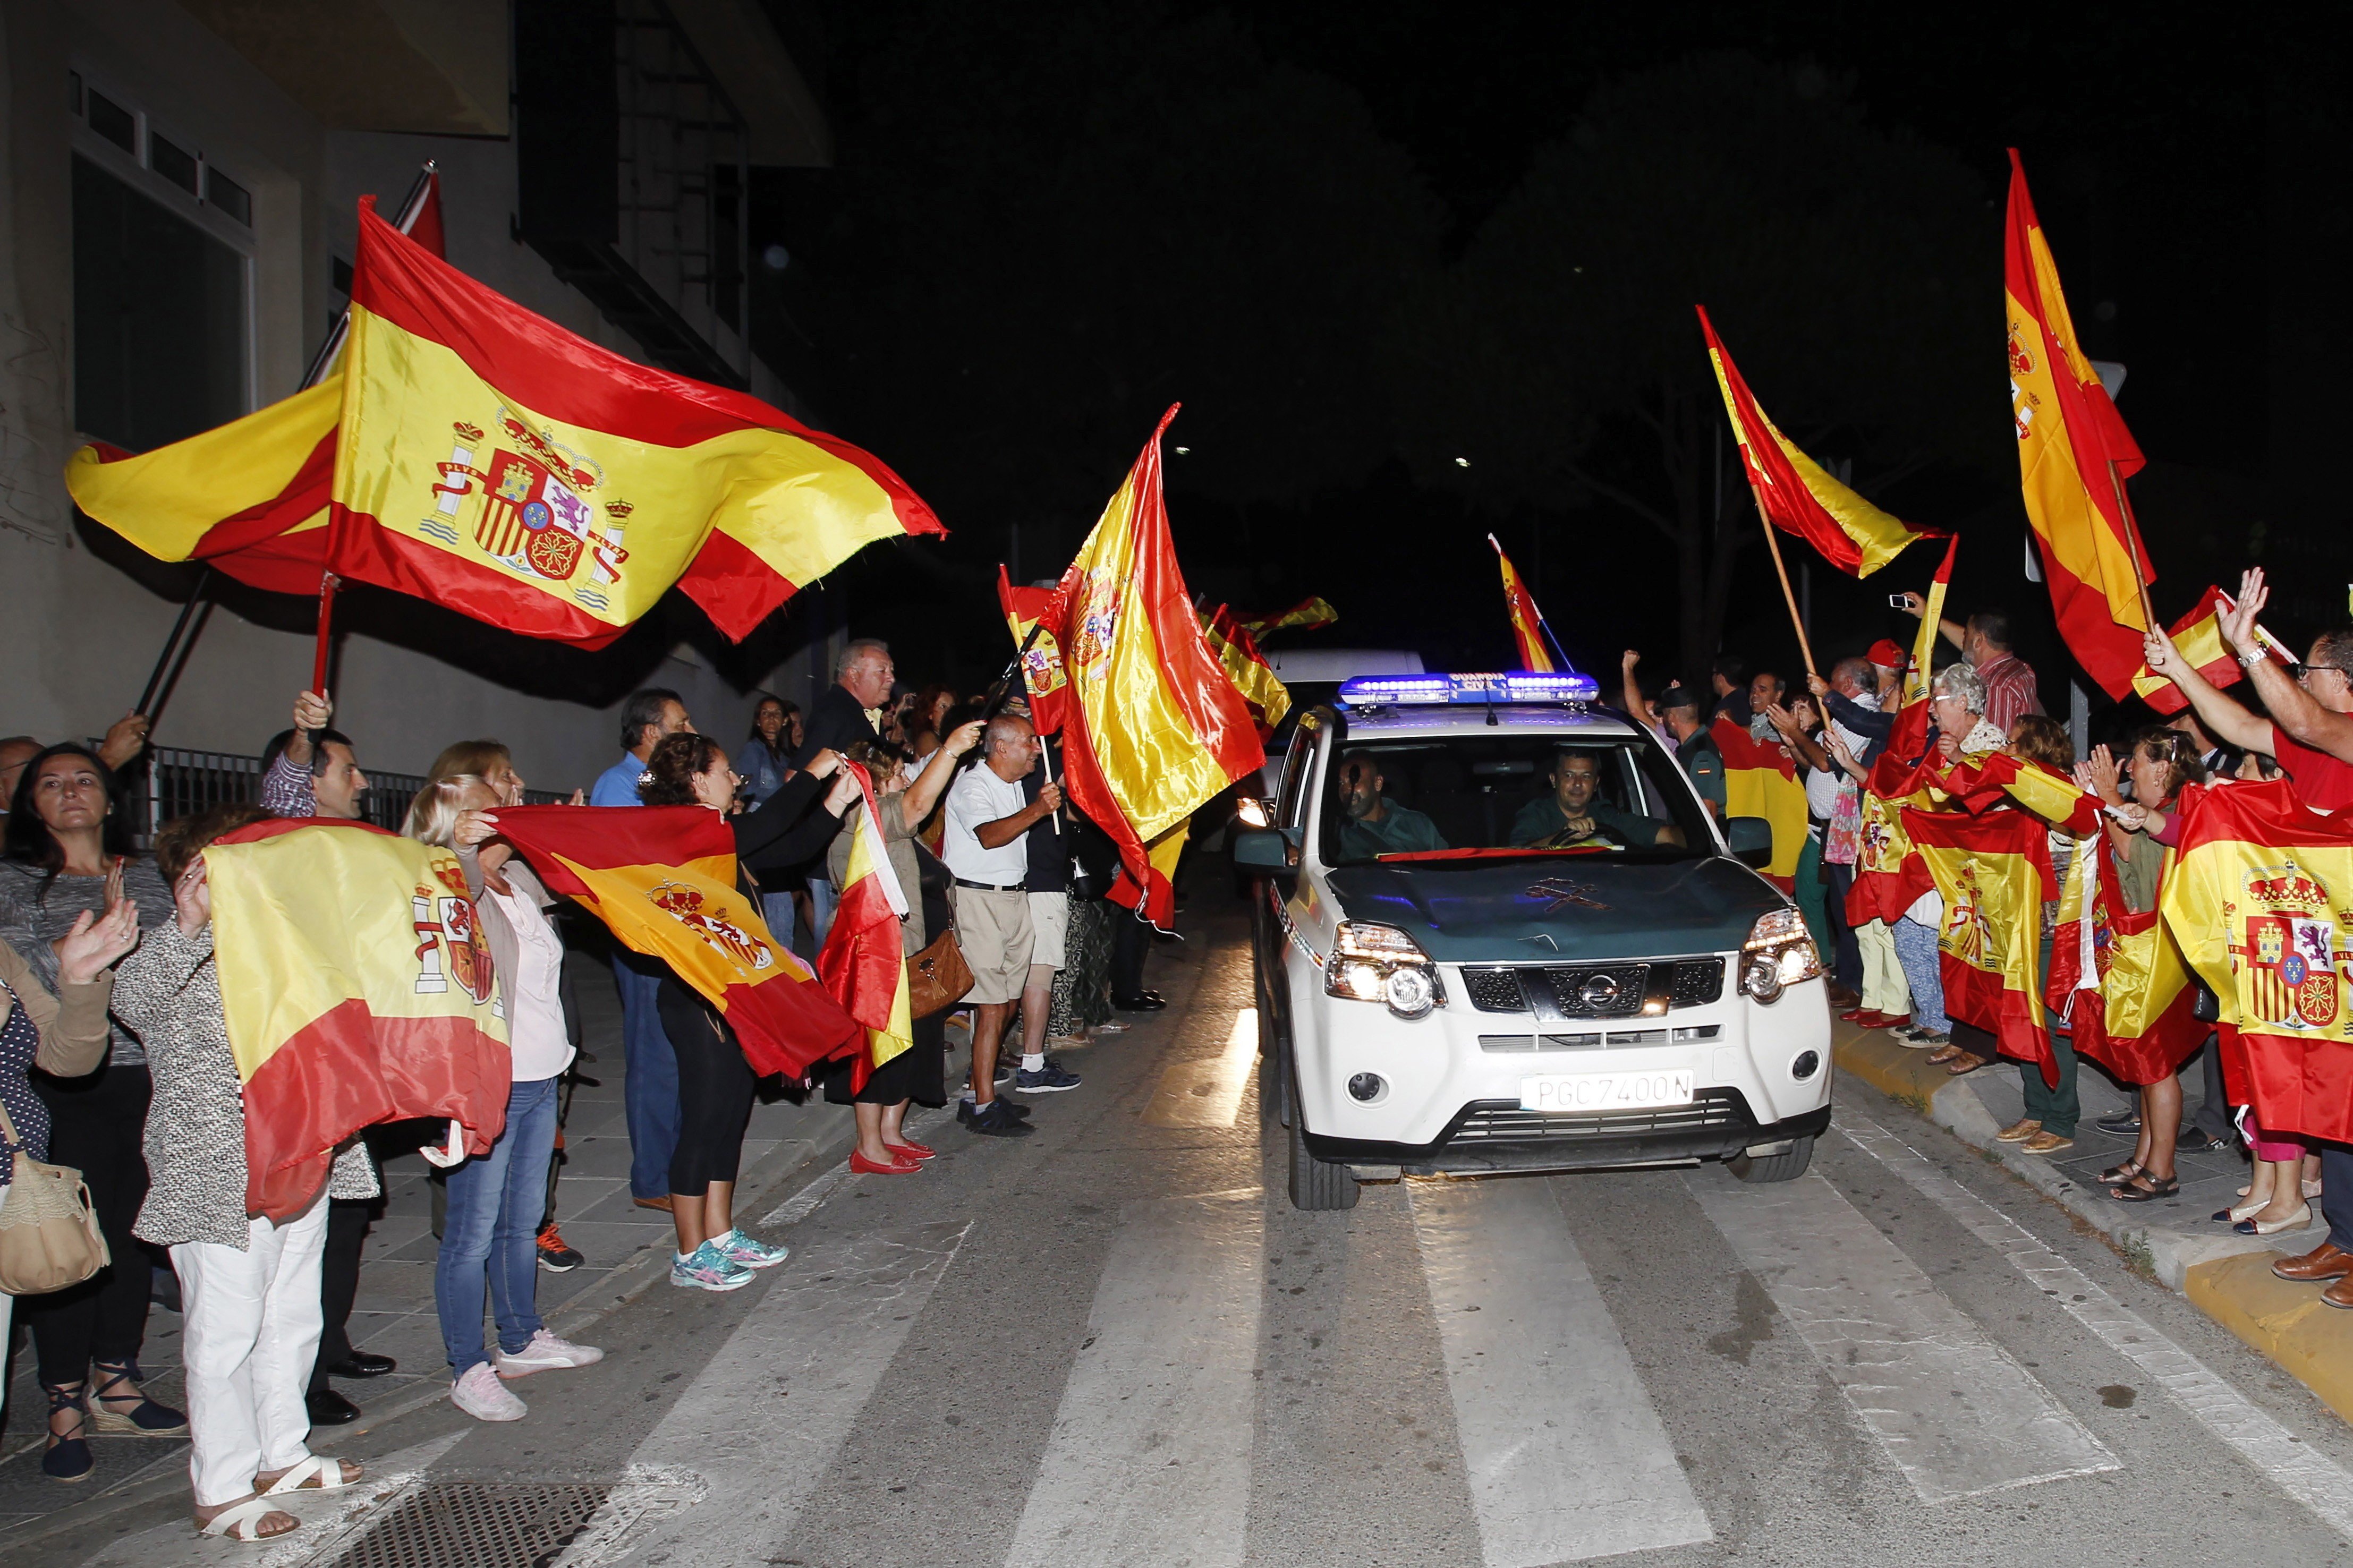 Vídeo: Guardias civiles también cantaban "a por ellos" cuando iban hacia Catalunya